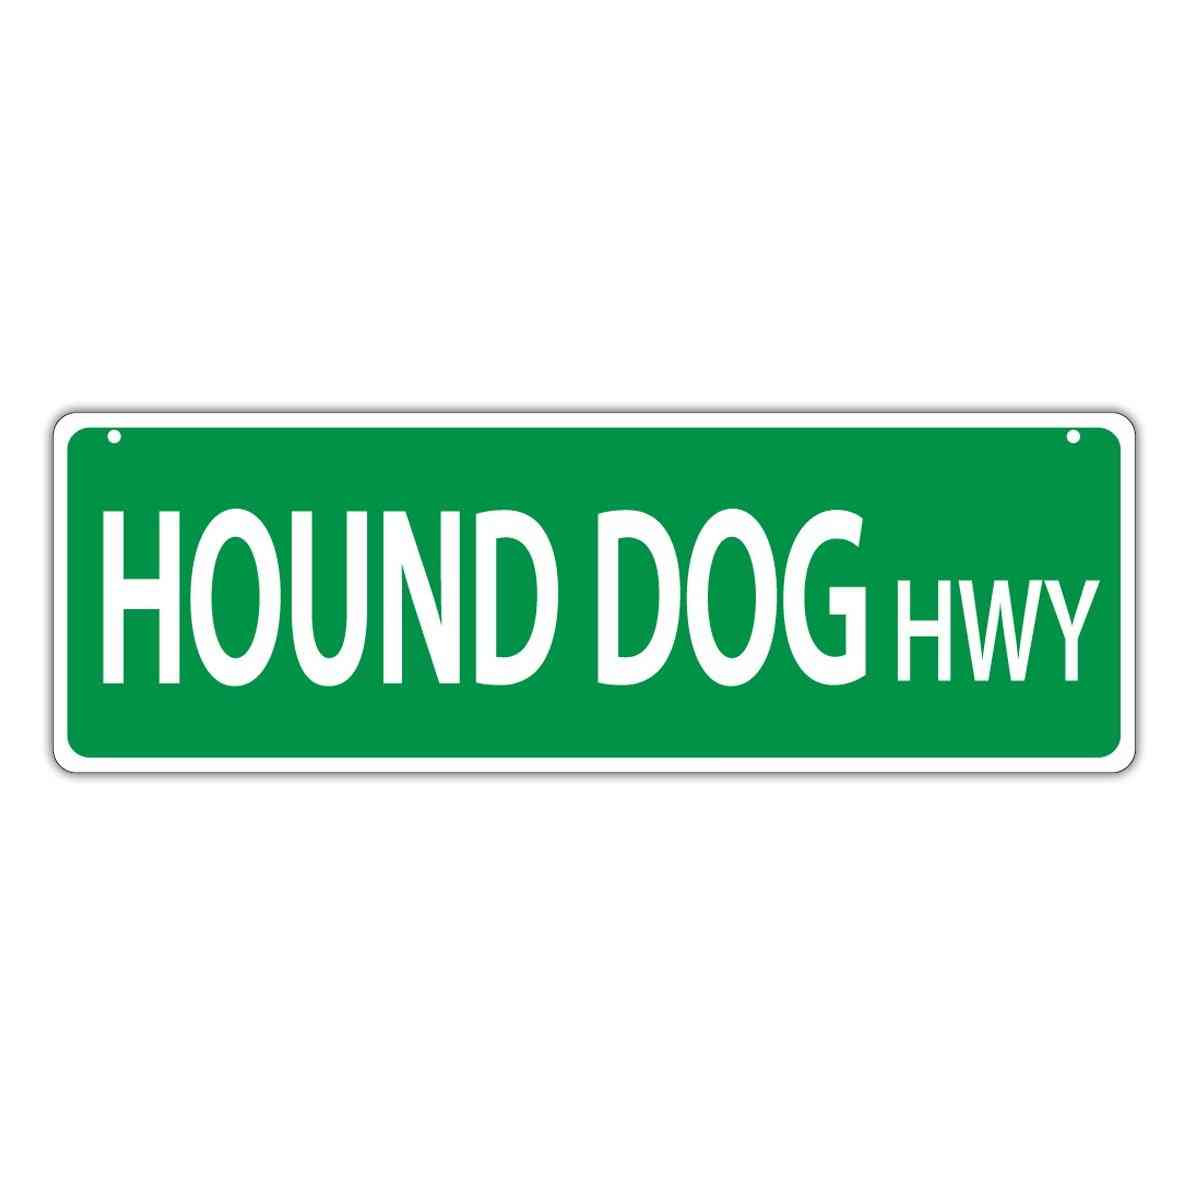 Street Sign - Hound Dog Highway